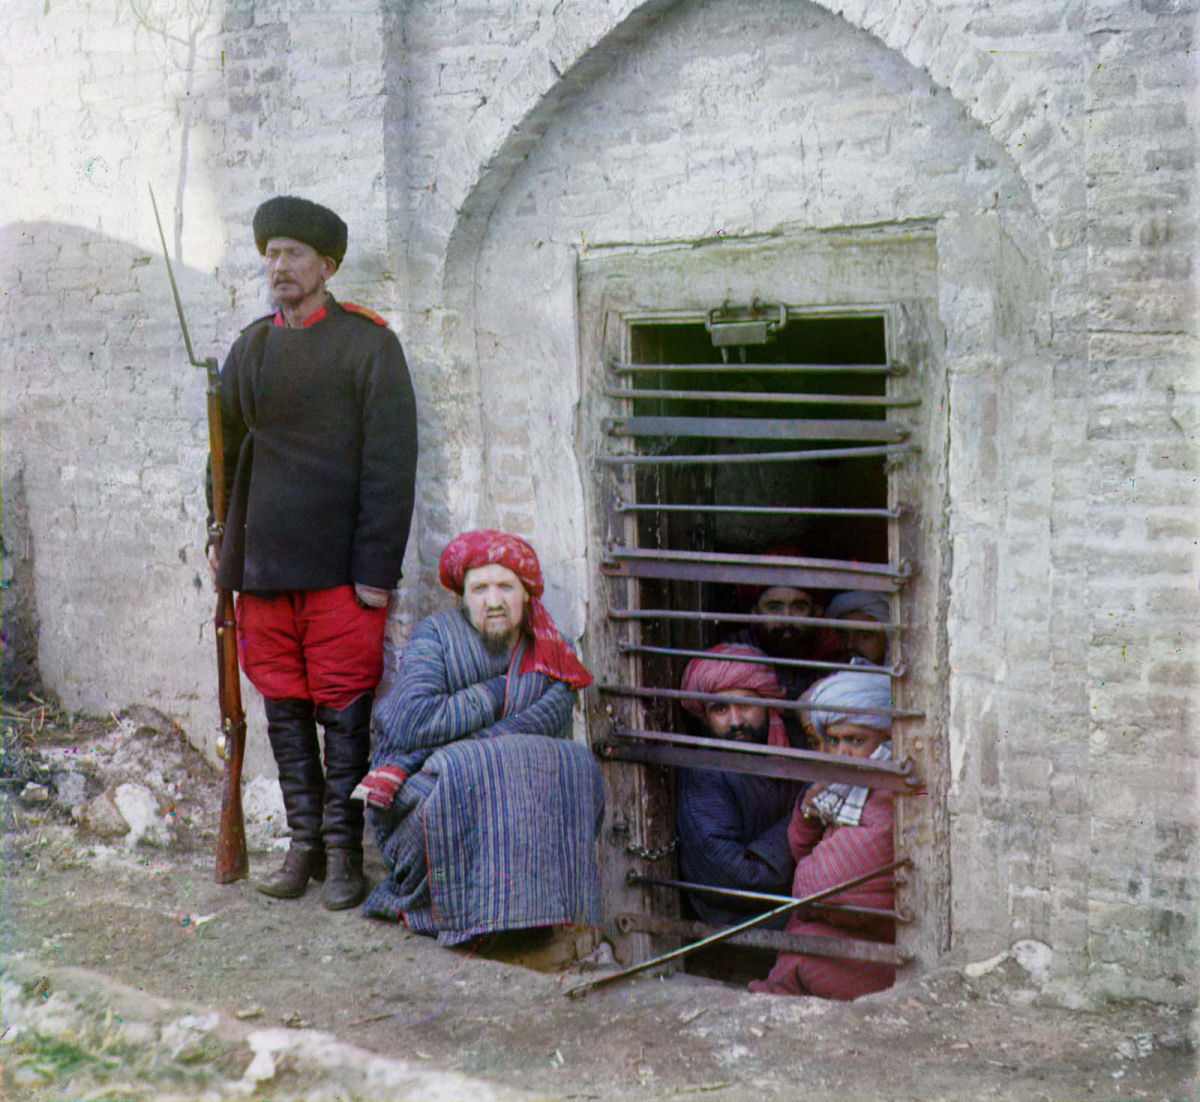 O Uzbequistão da era czarista capturado em raras fotos coloridas, entre 1907 e 1911 16